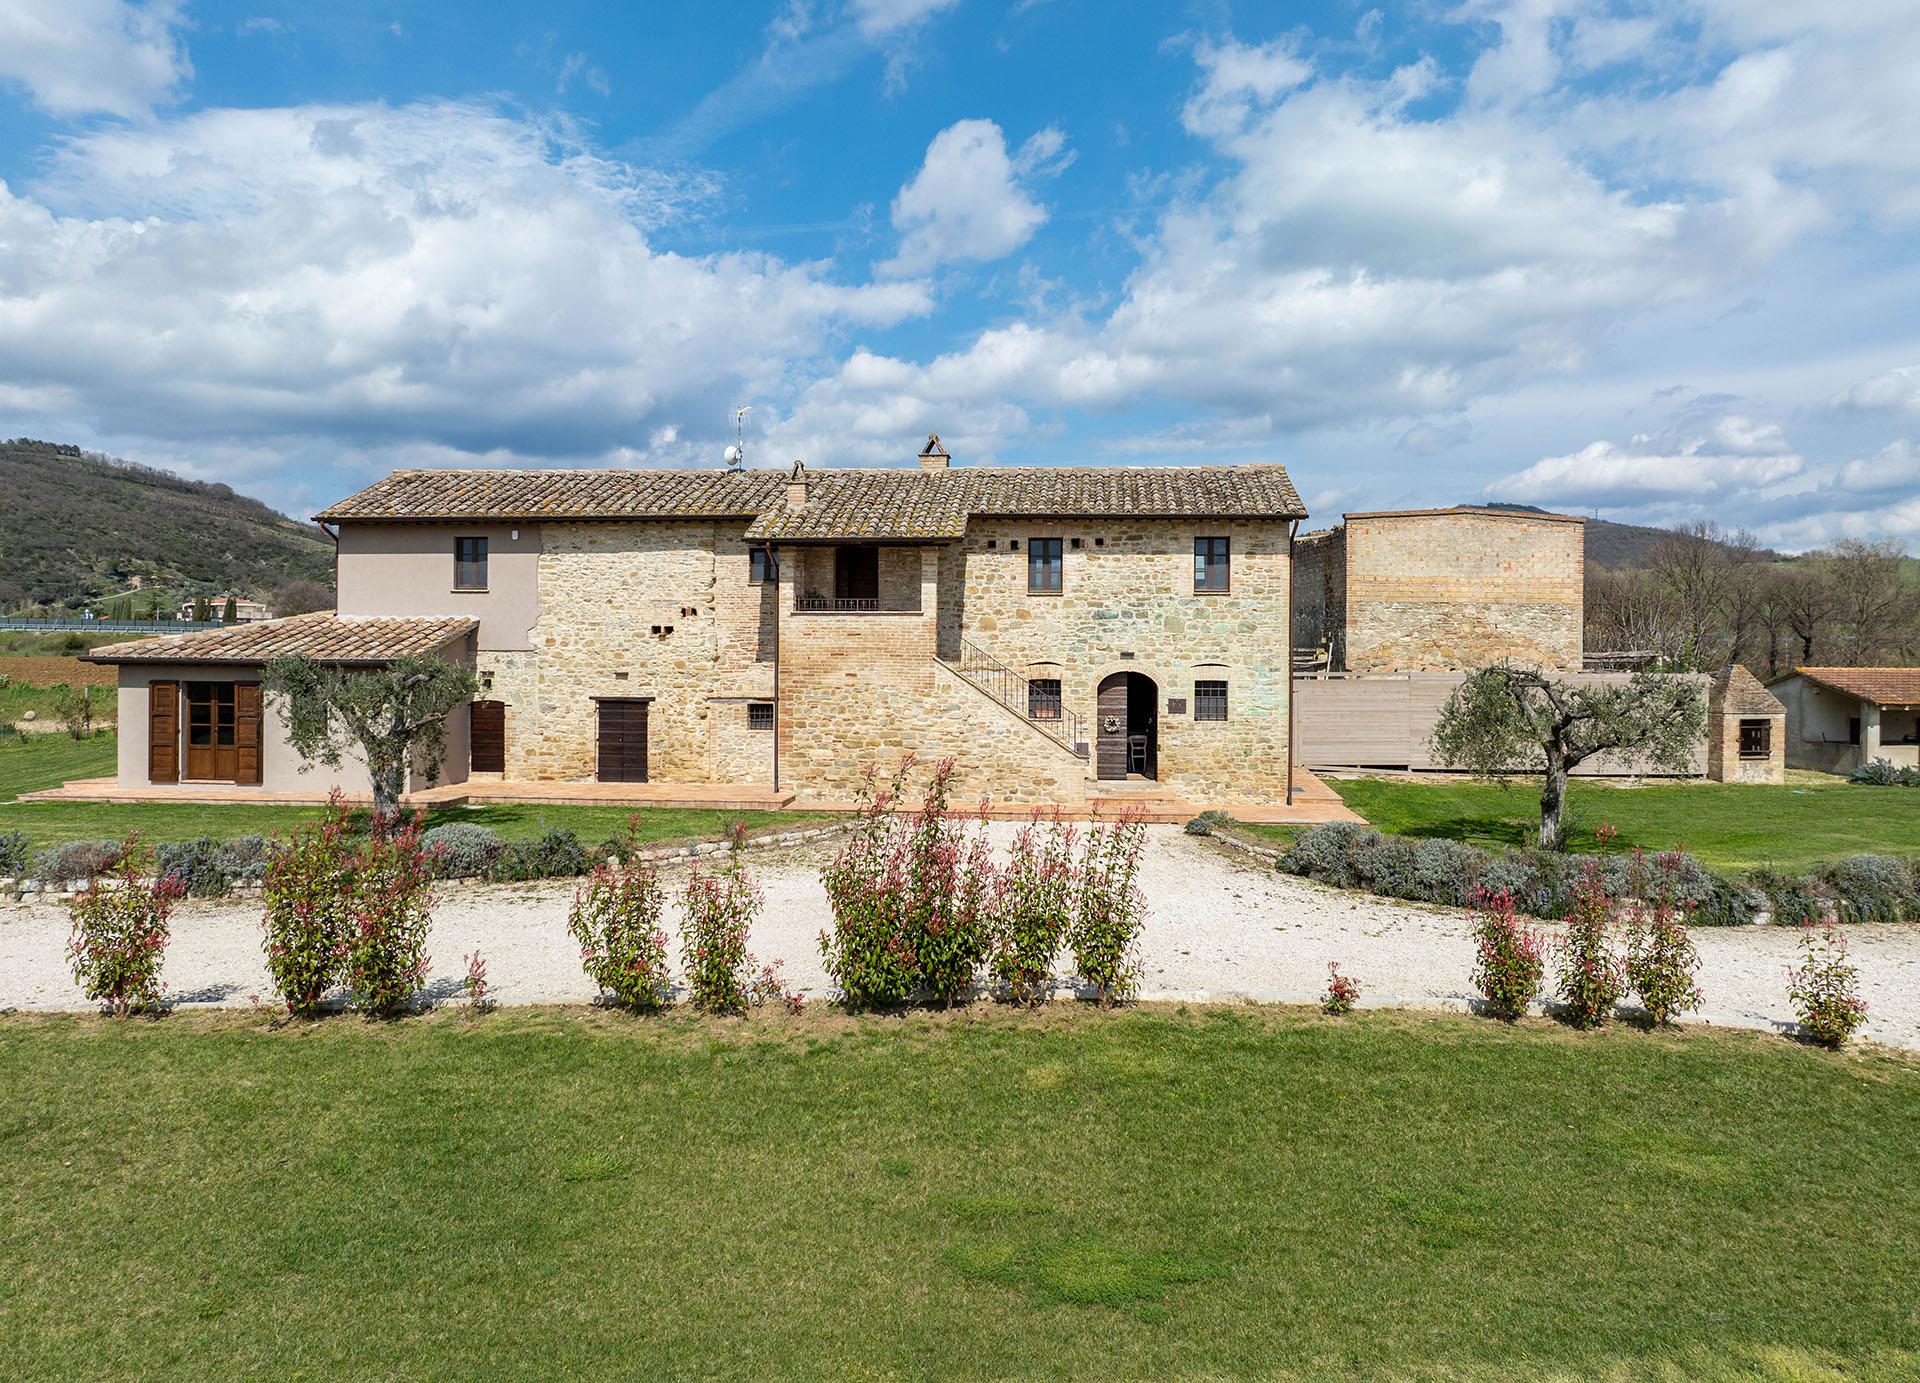 Casale ristrutturato nelle vicinanze di Assisi